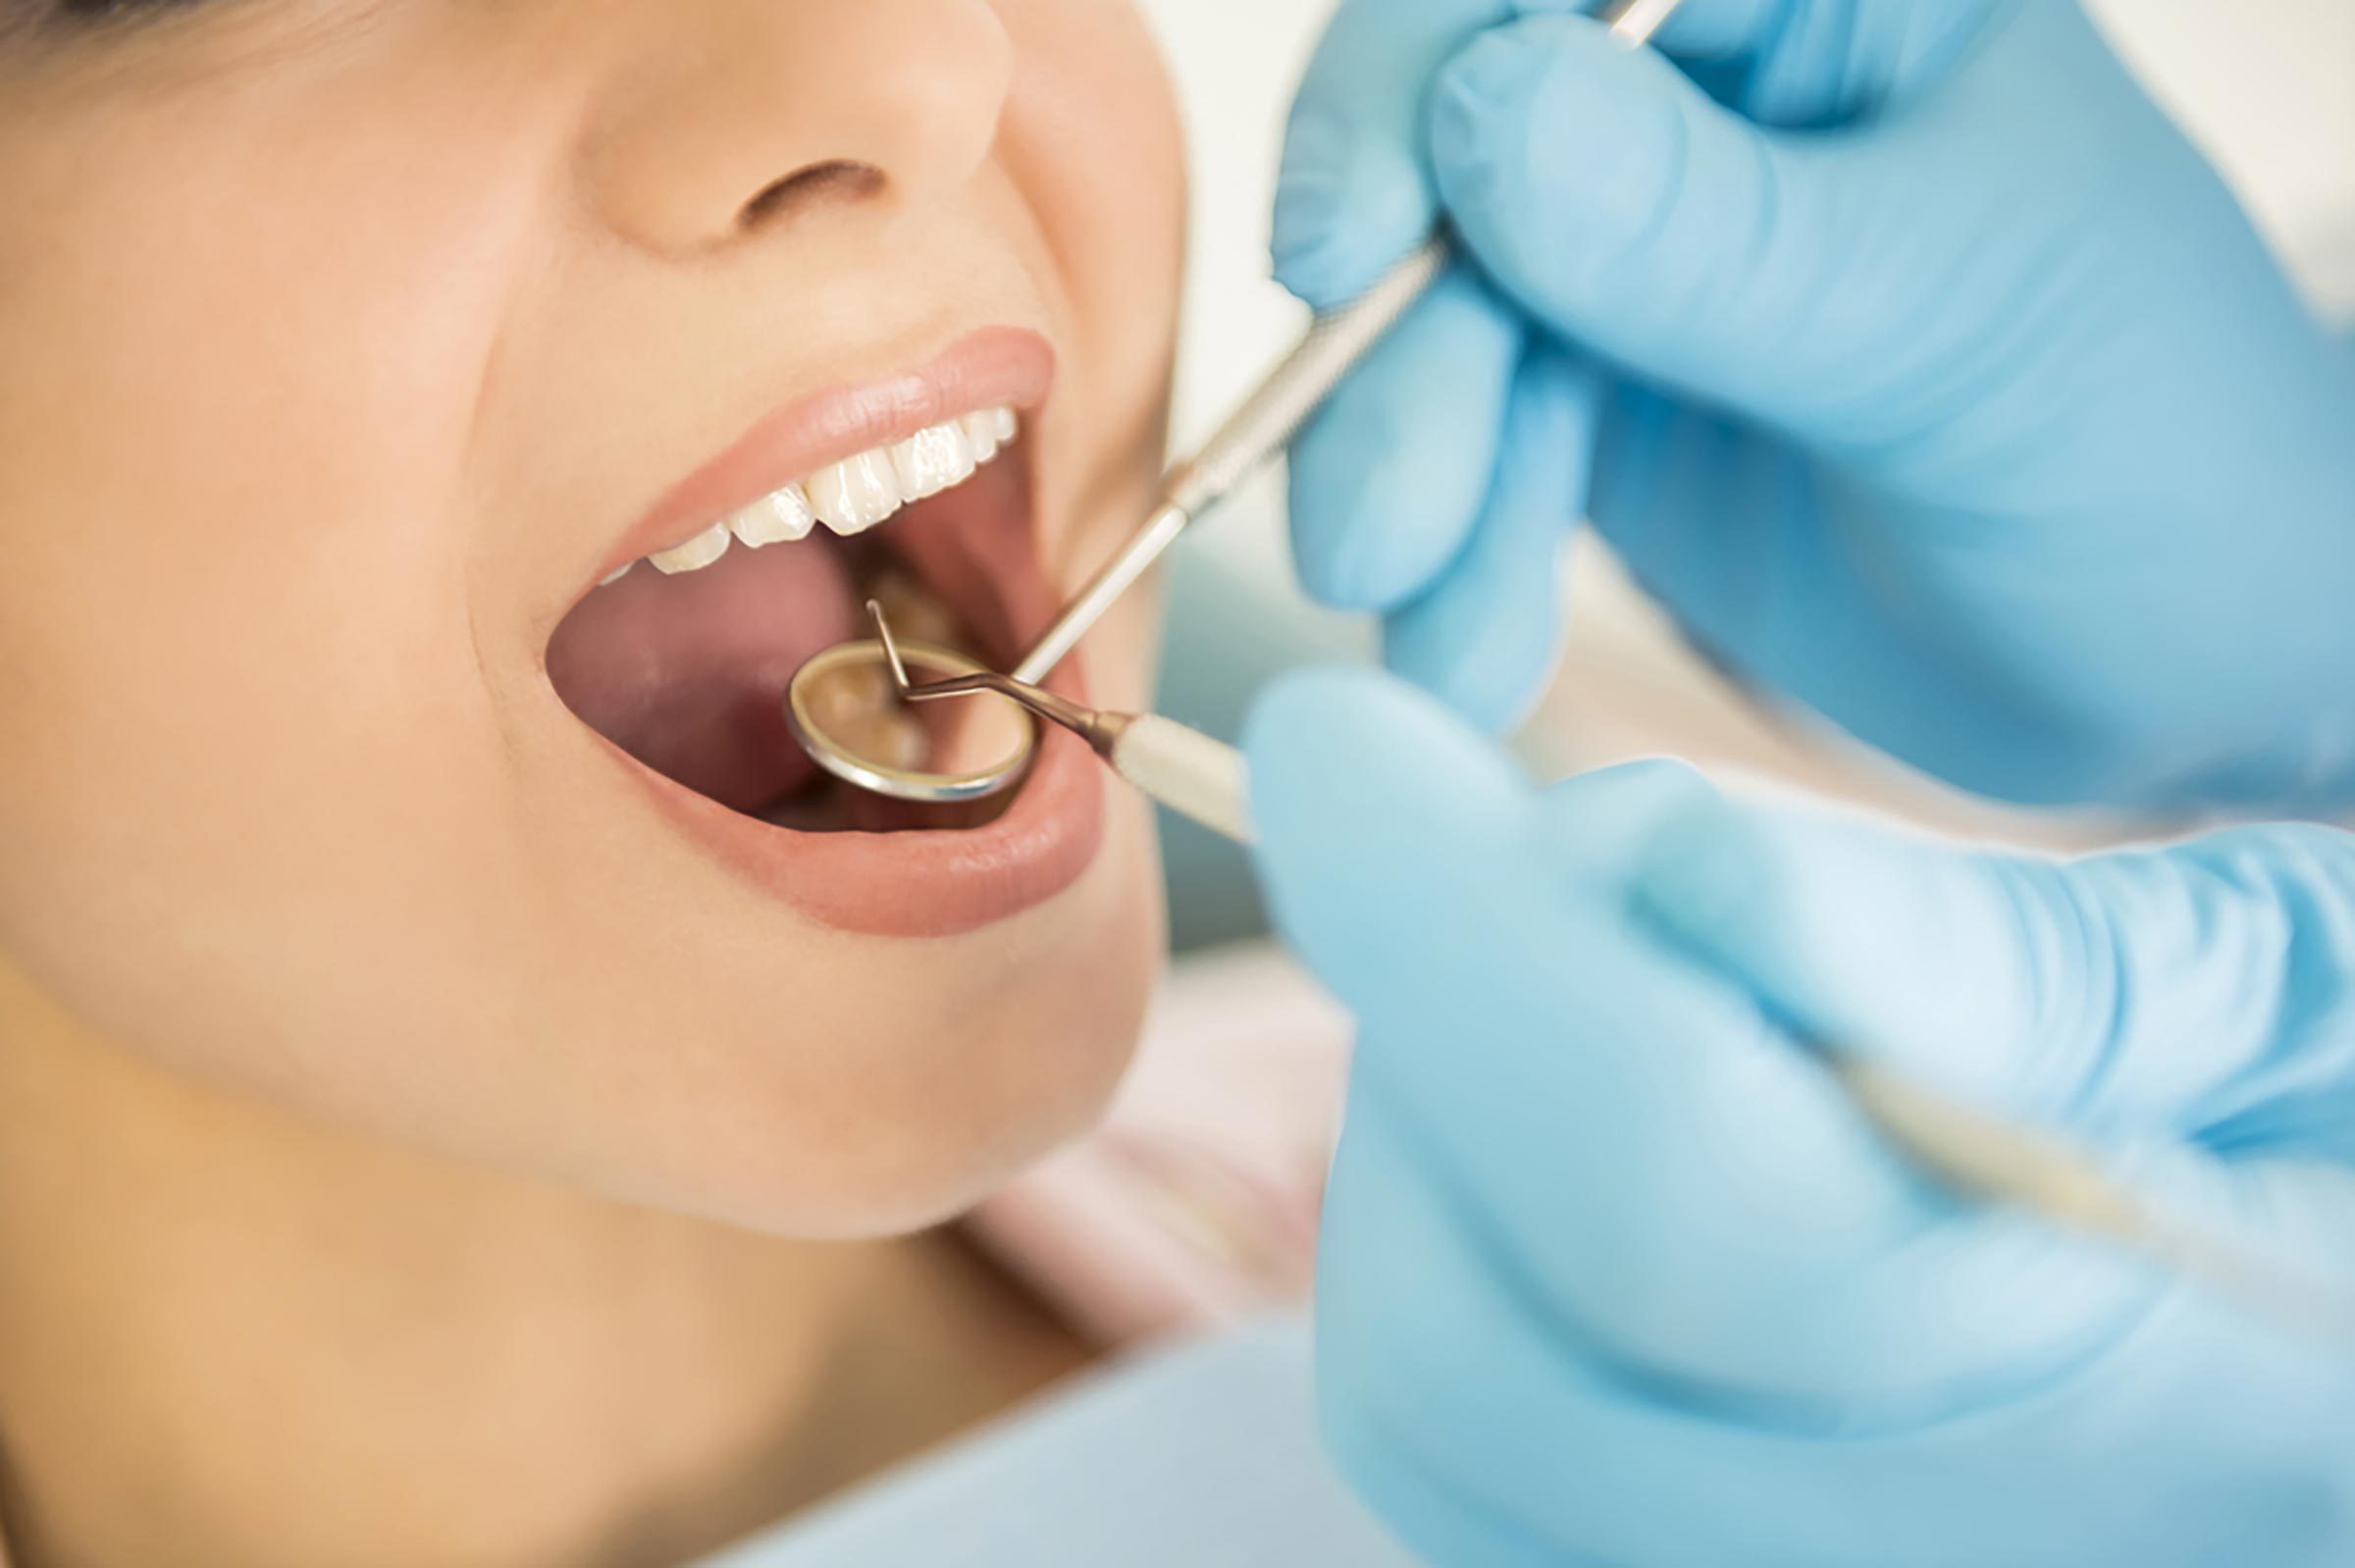 Conseil santé : consulter un dentiste tous les six mois